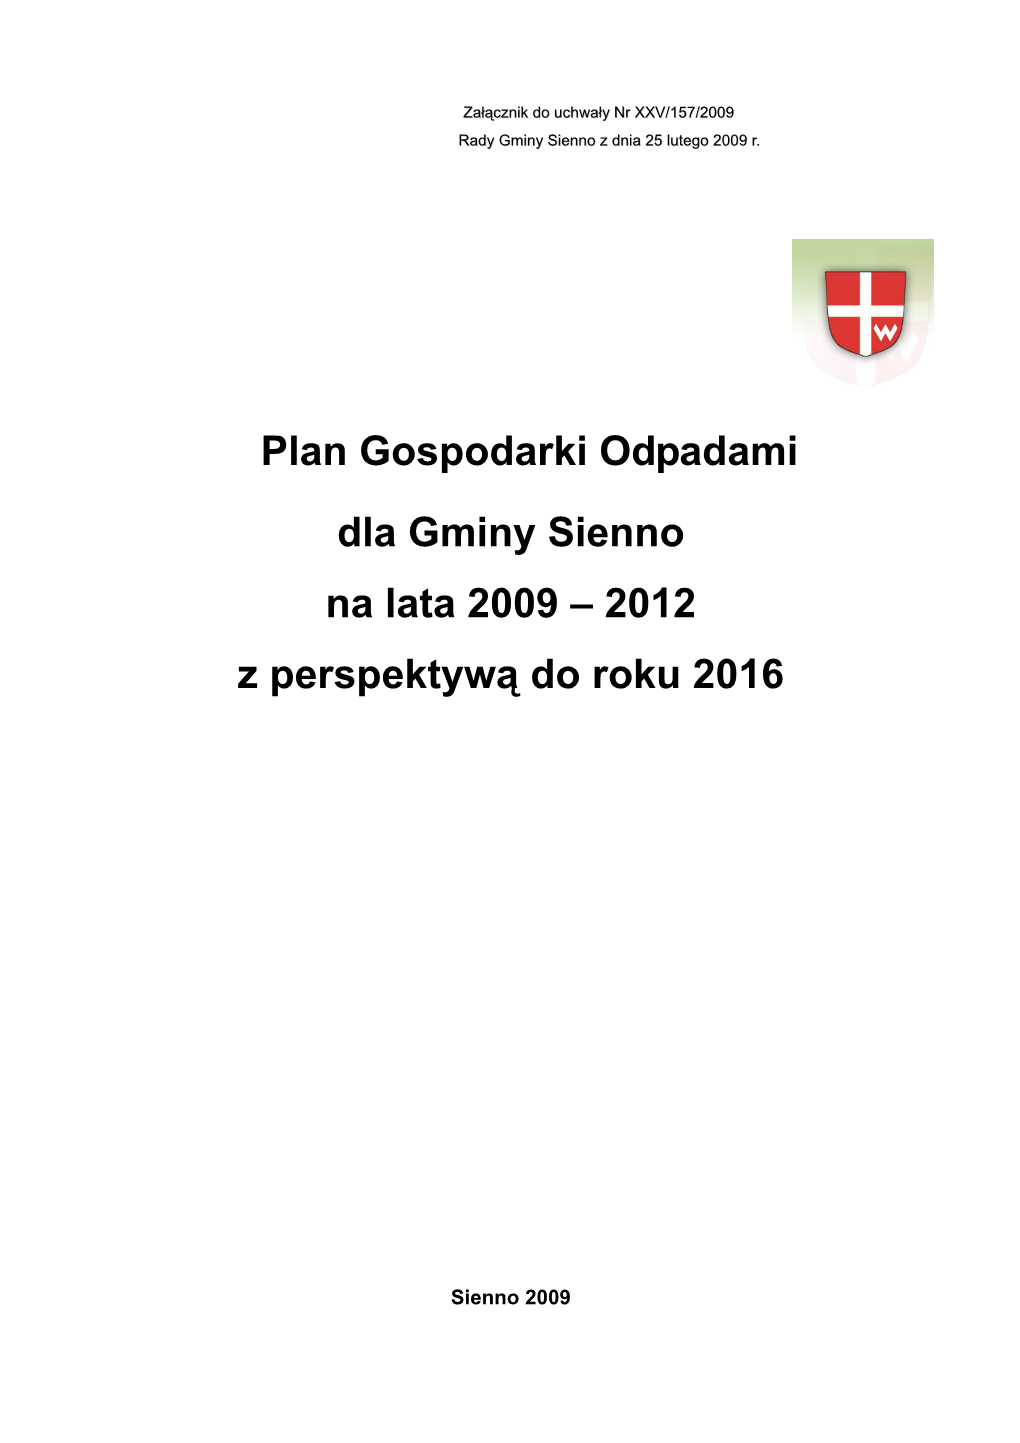 Plan Gospodarki Odpadami Dla Gminy Sienno Na Lata 2009-2012 Z Perspektywą Do Roku 2016 ������������ � 1�� Wstęp 6 1.1.Podstawa Opracowania 6 1.2